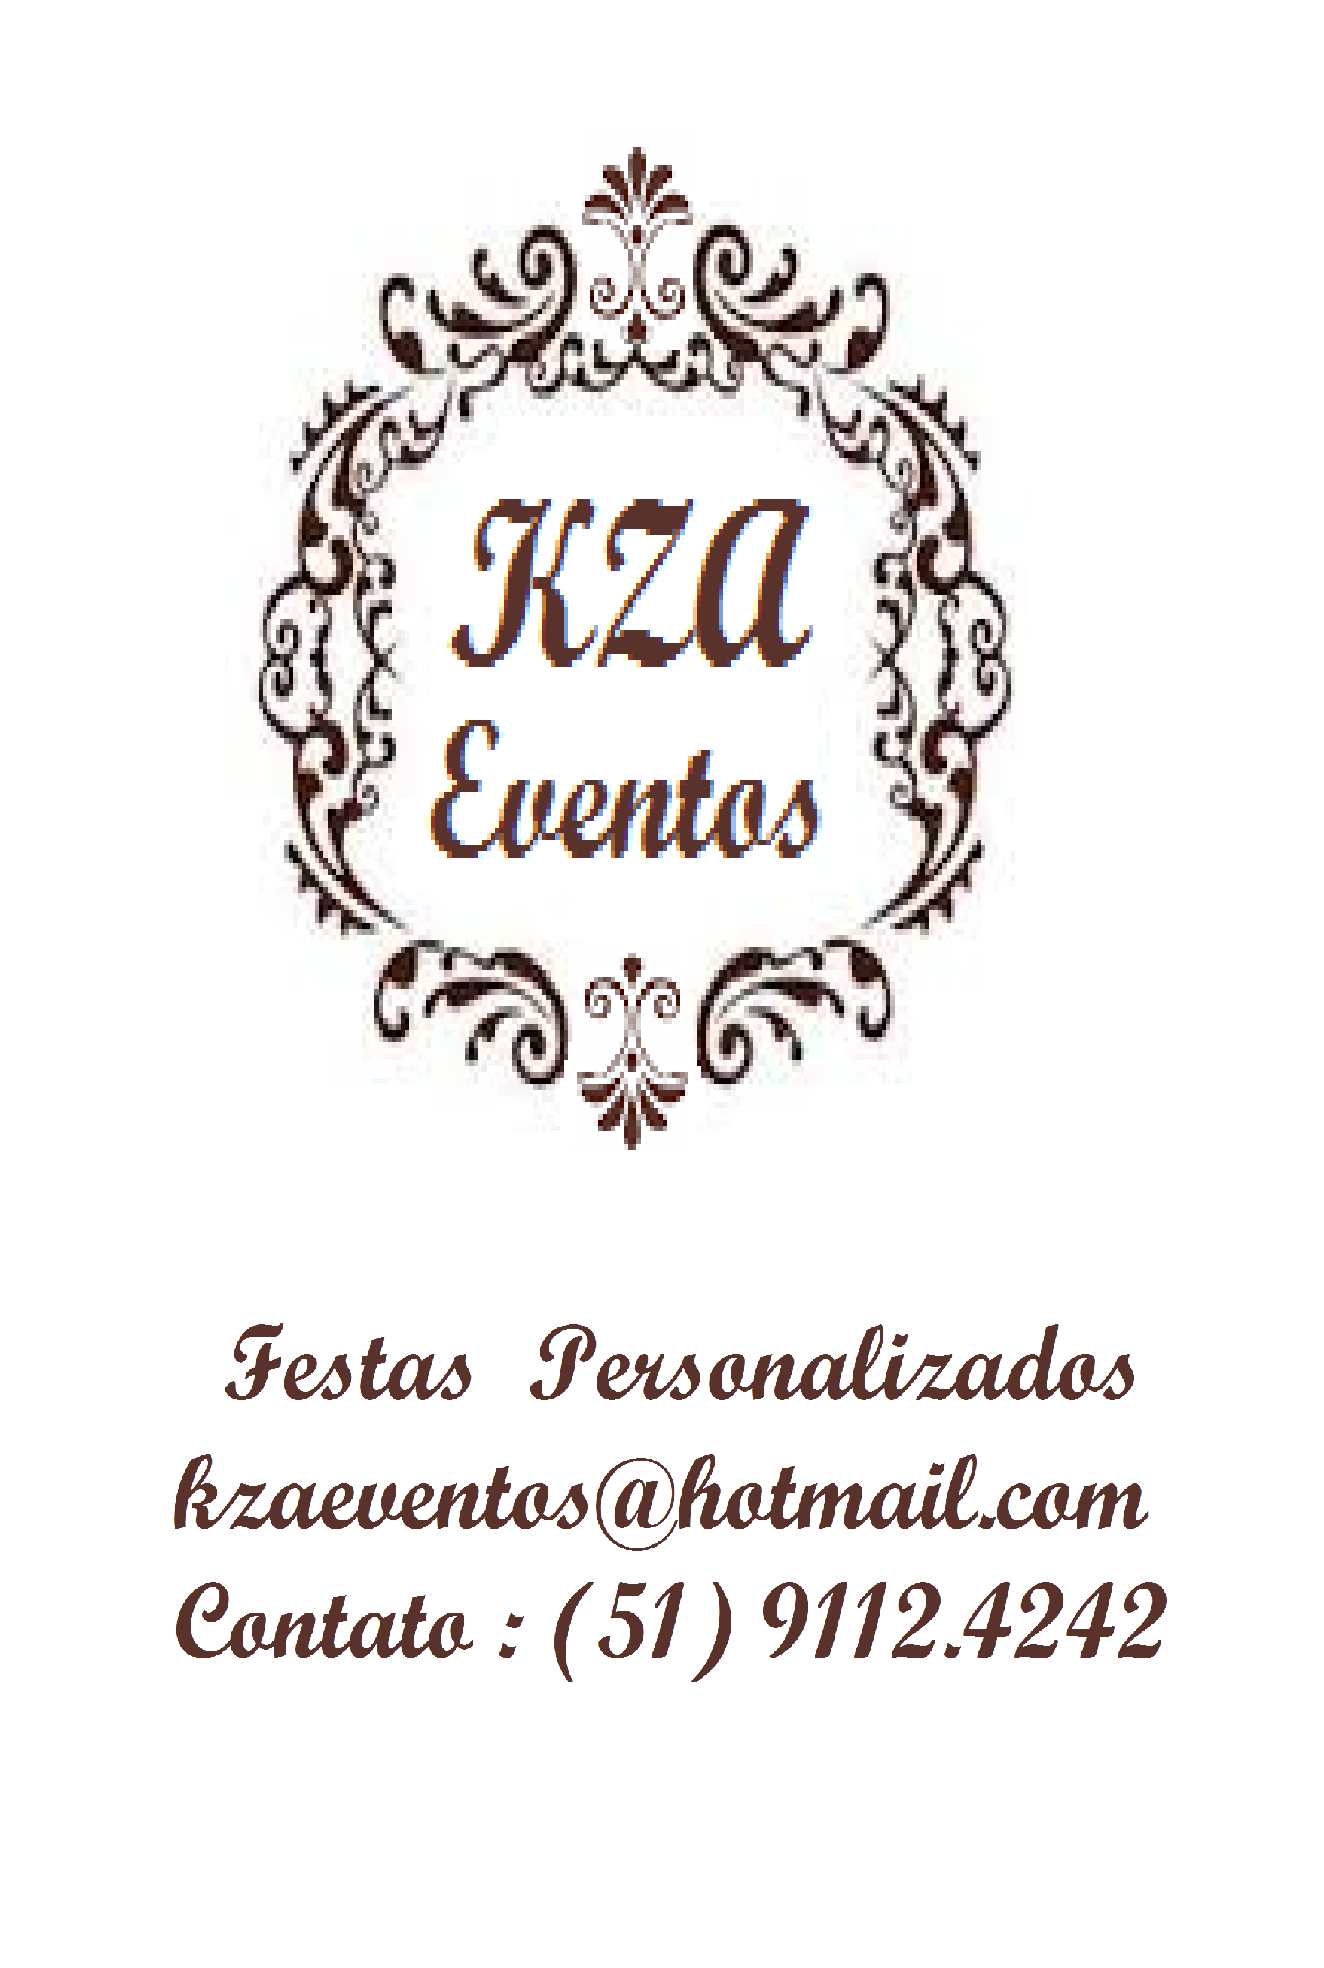 KZA EVENTOS - Evento - Espaço - Porto Alegre, RS